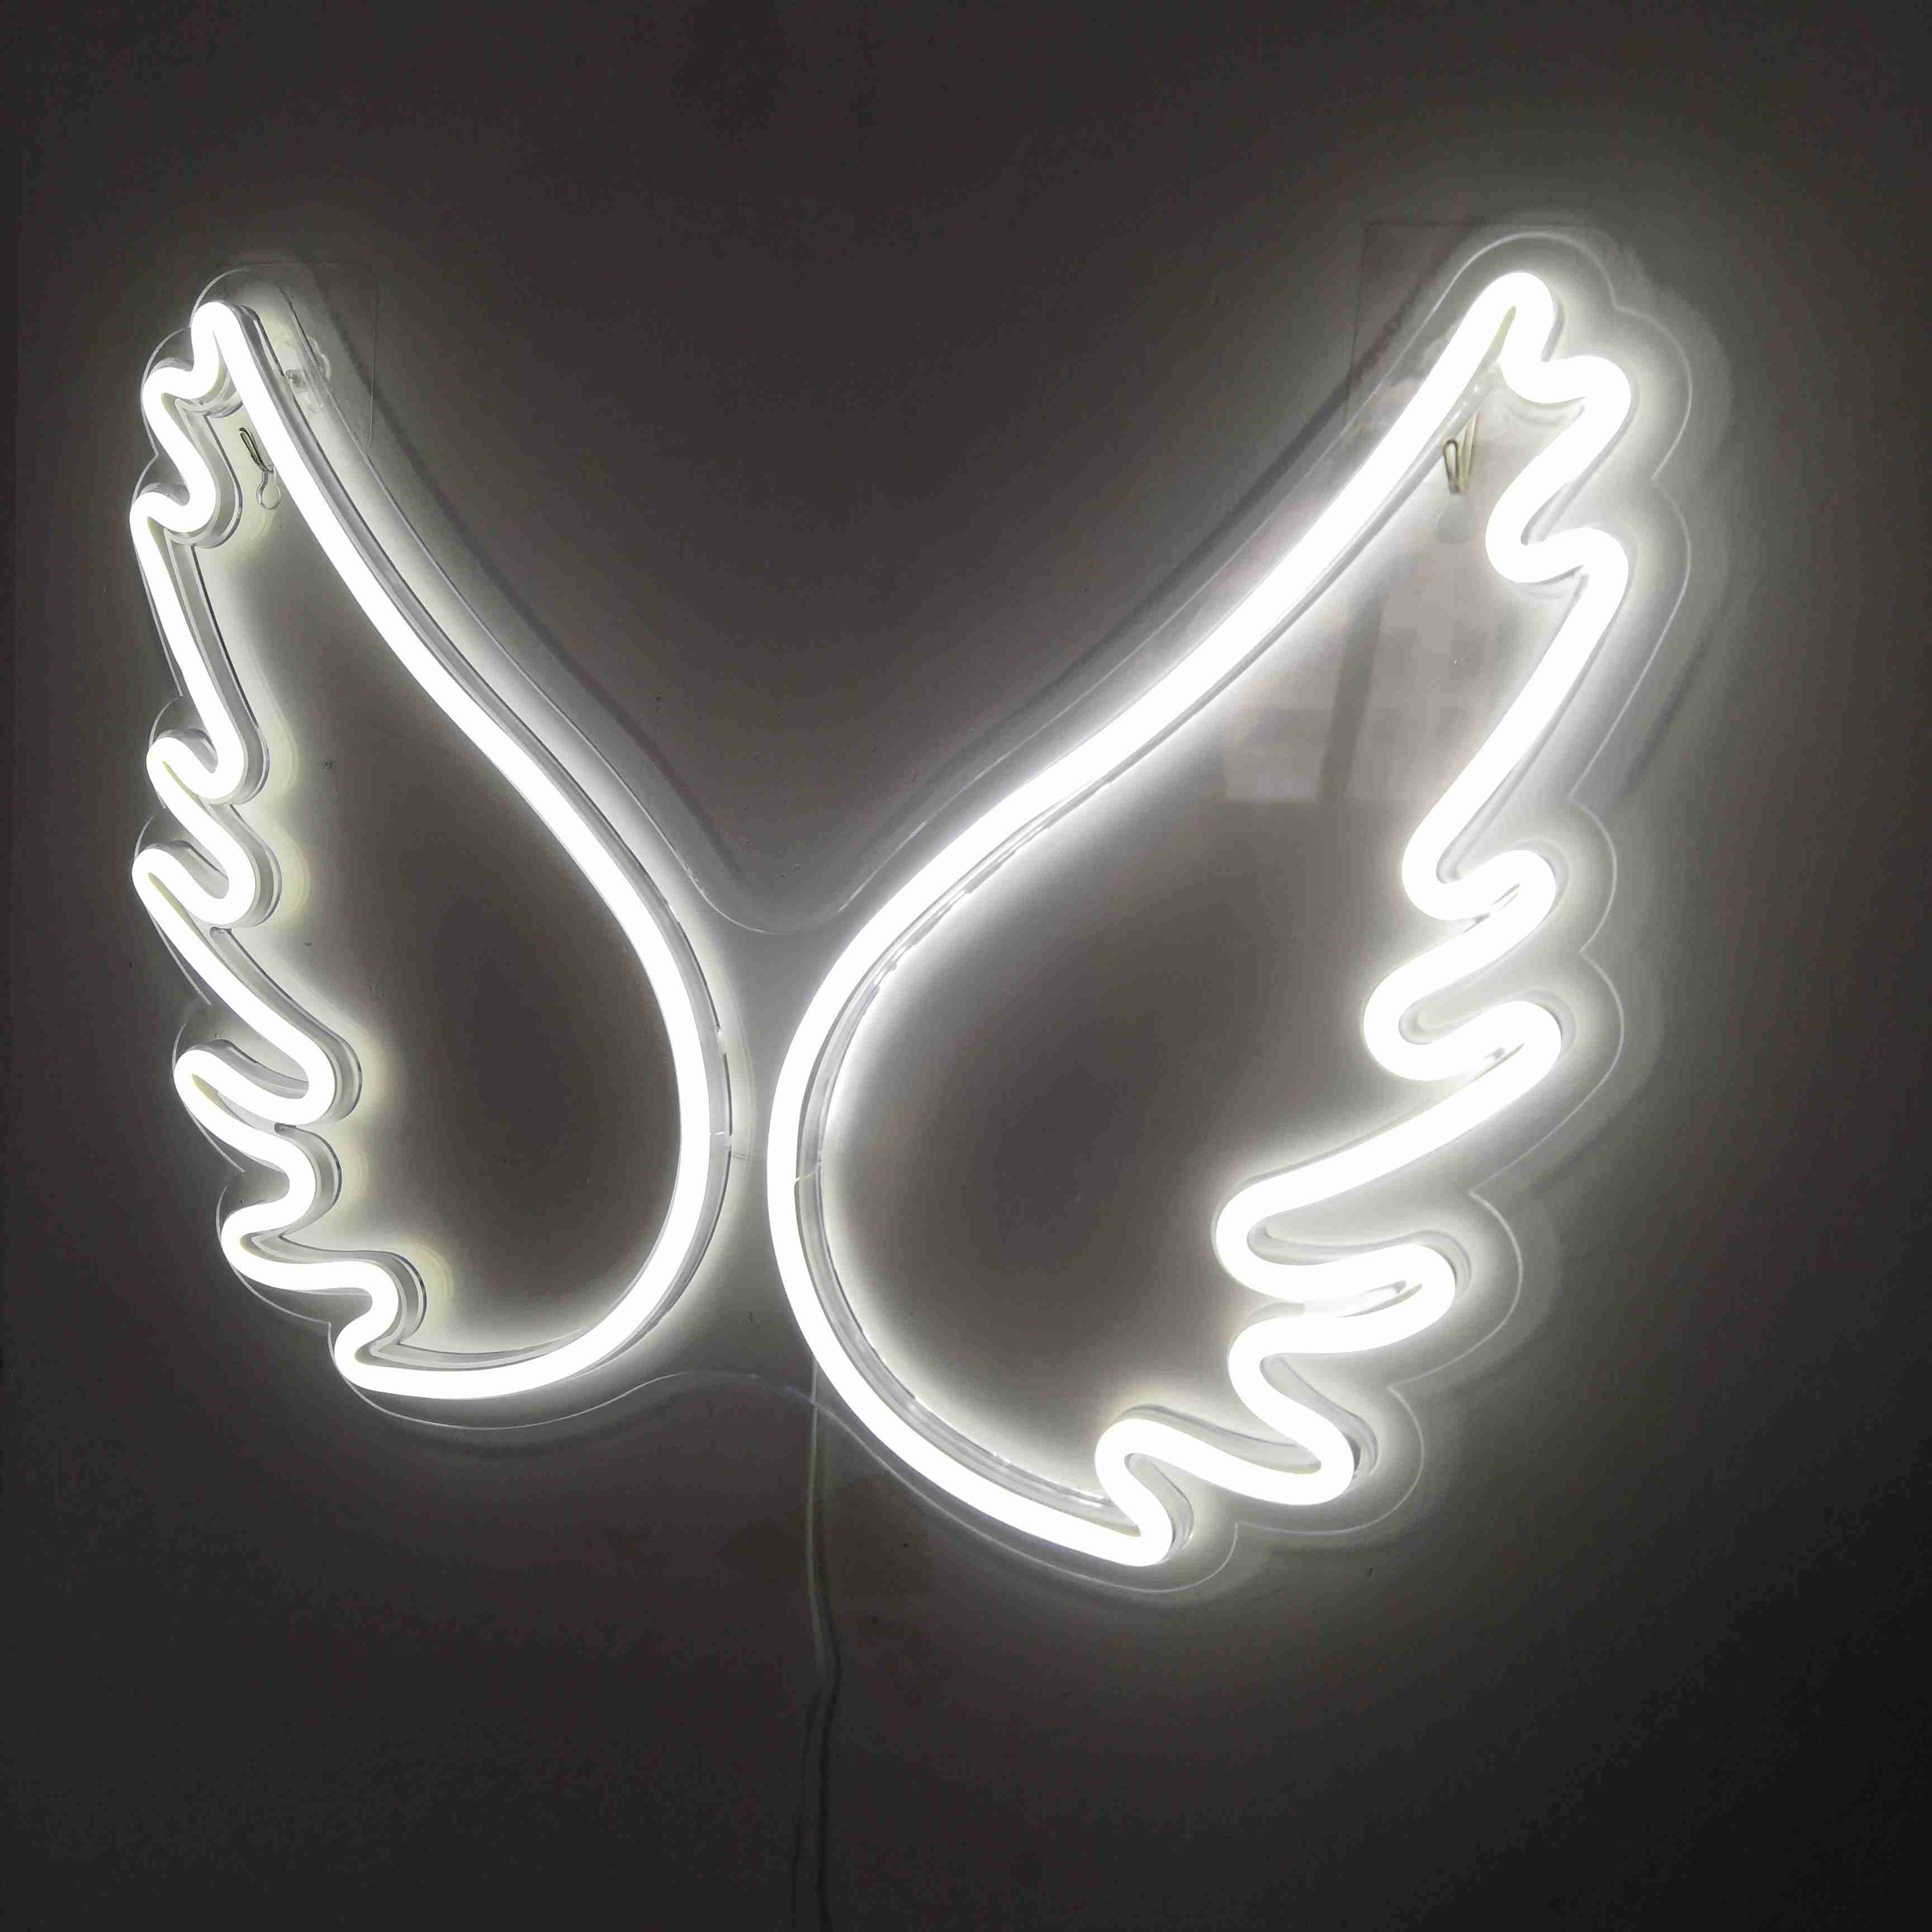 NEON LED Licht, dekorative Wand-Leuchte, Flügel weiß